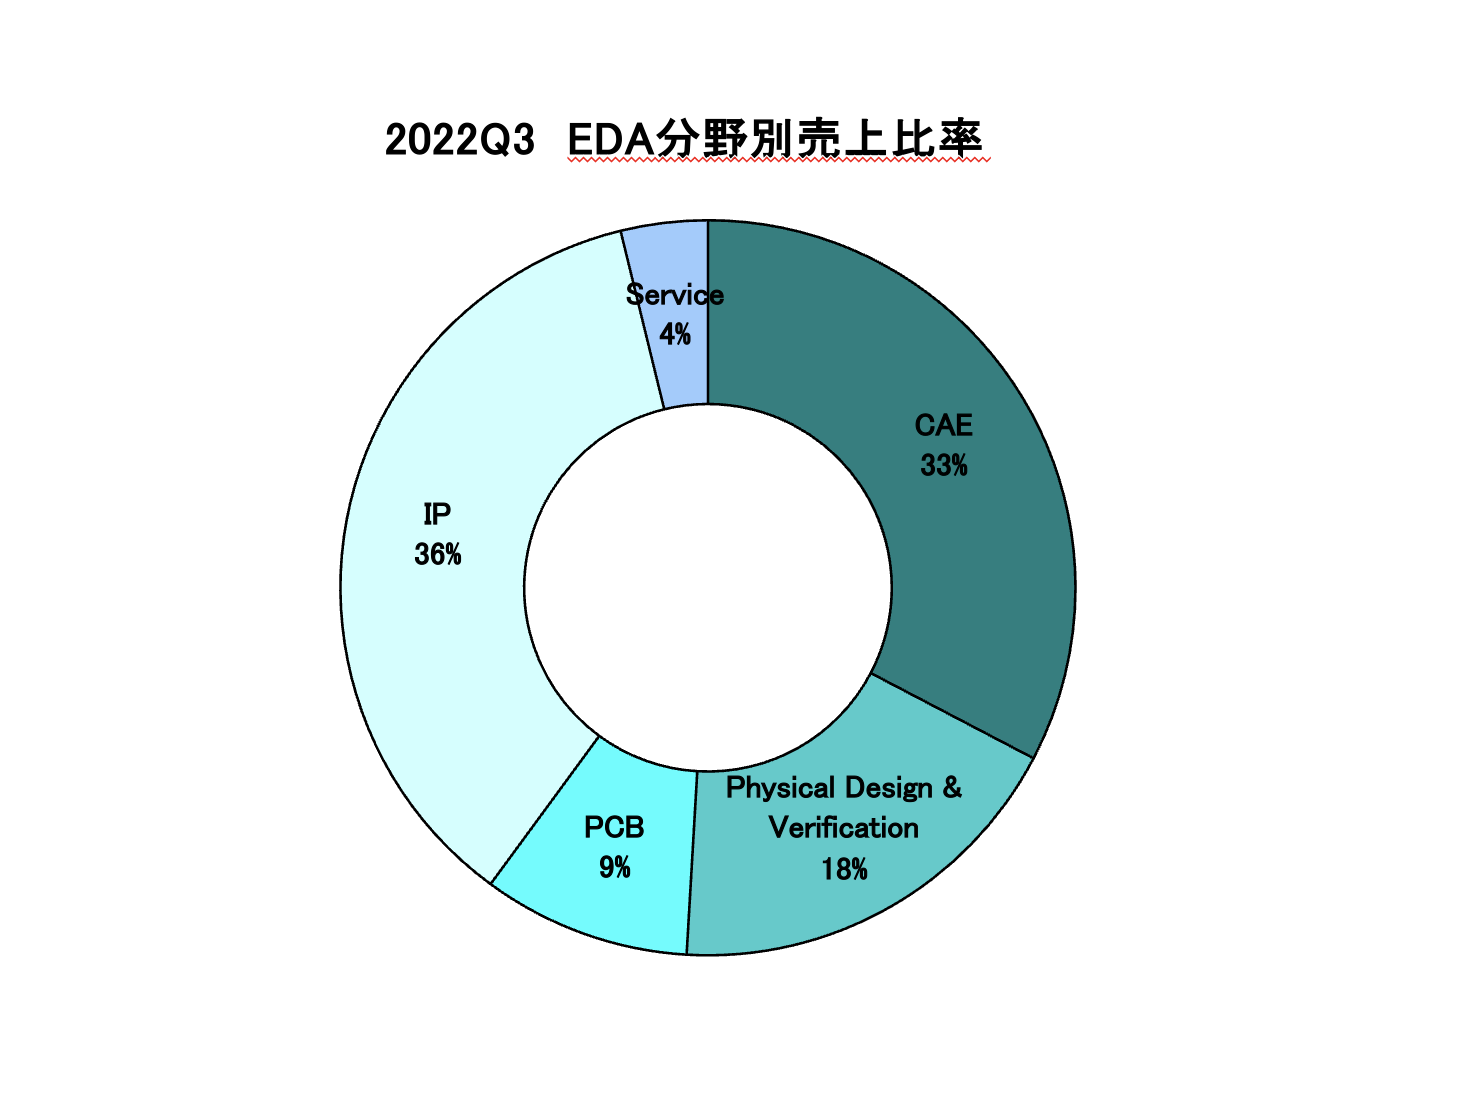 https://www.eda-express.com/%E3%82%B9%E3%82%AF%E3%83%AA%E3%83%BC%E3%83%B3%E3%82%B7%E3%83%A7%E3%83%83%E3%83%88%202023-01-25%2011.19.37.png